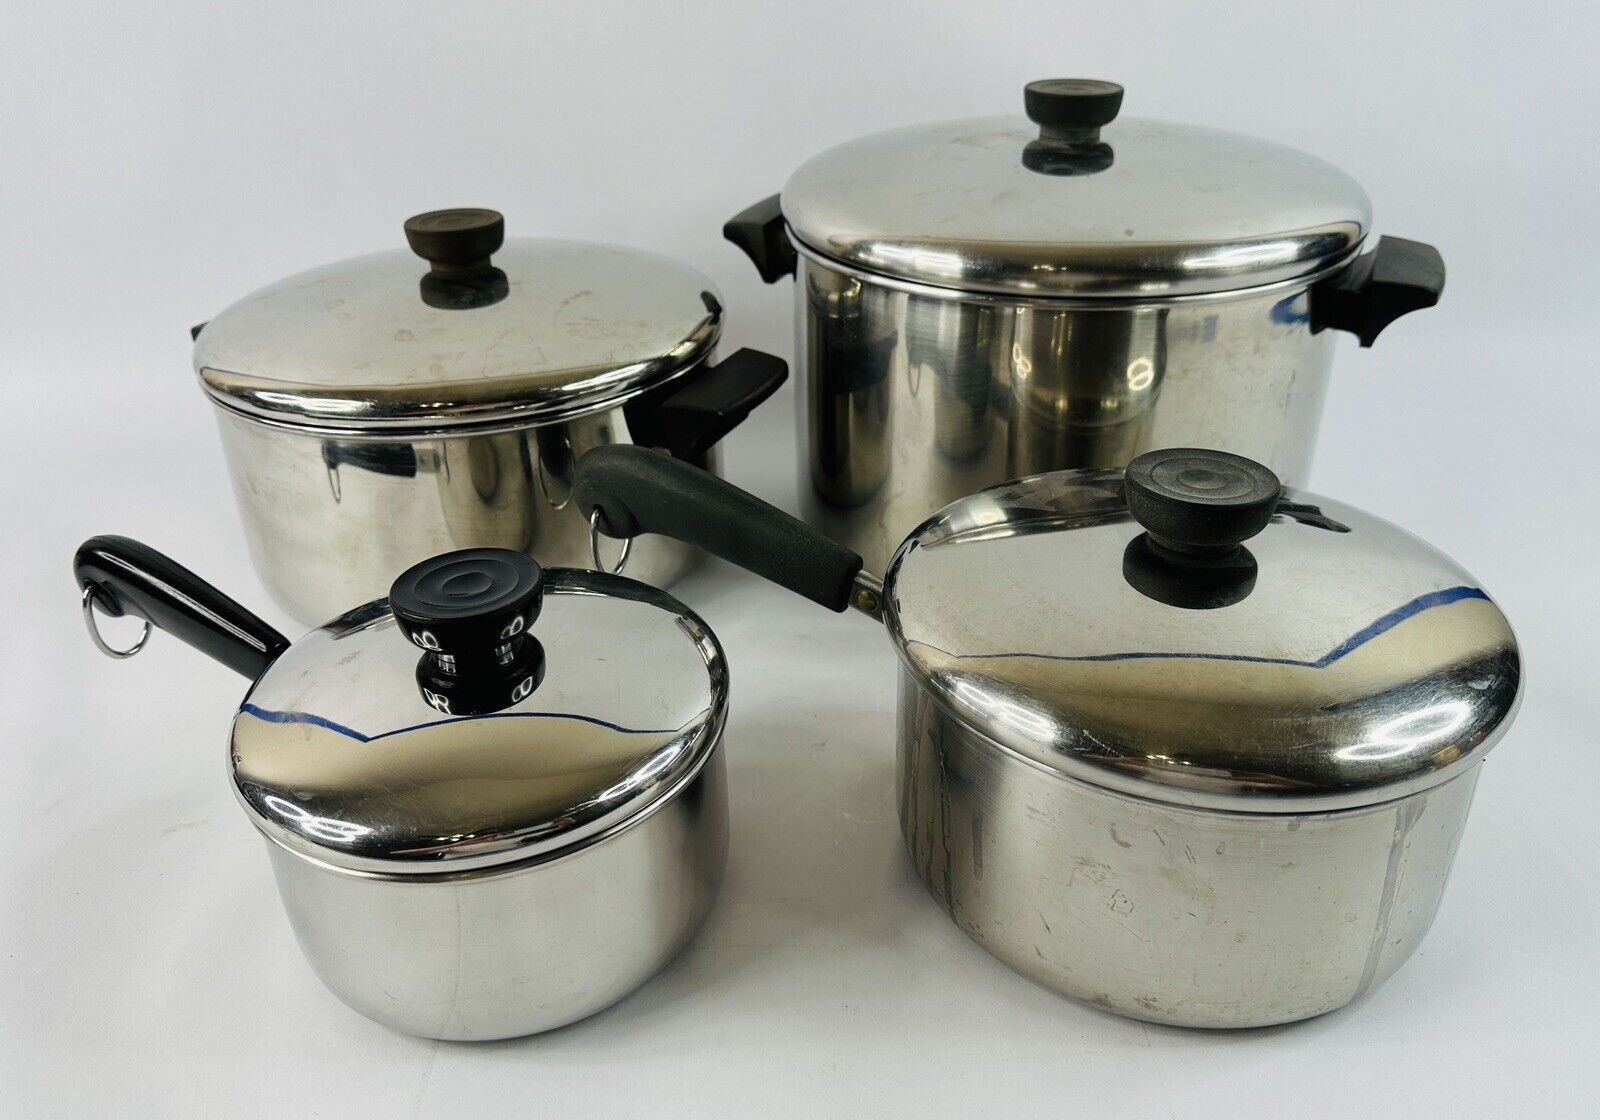 Vintage Revere Ware Pots And Pans Set w/Lids